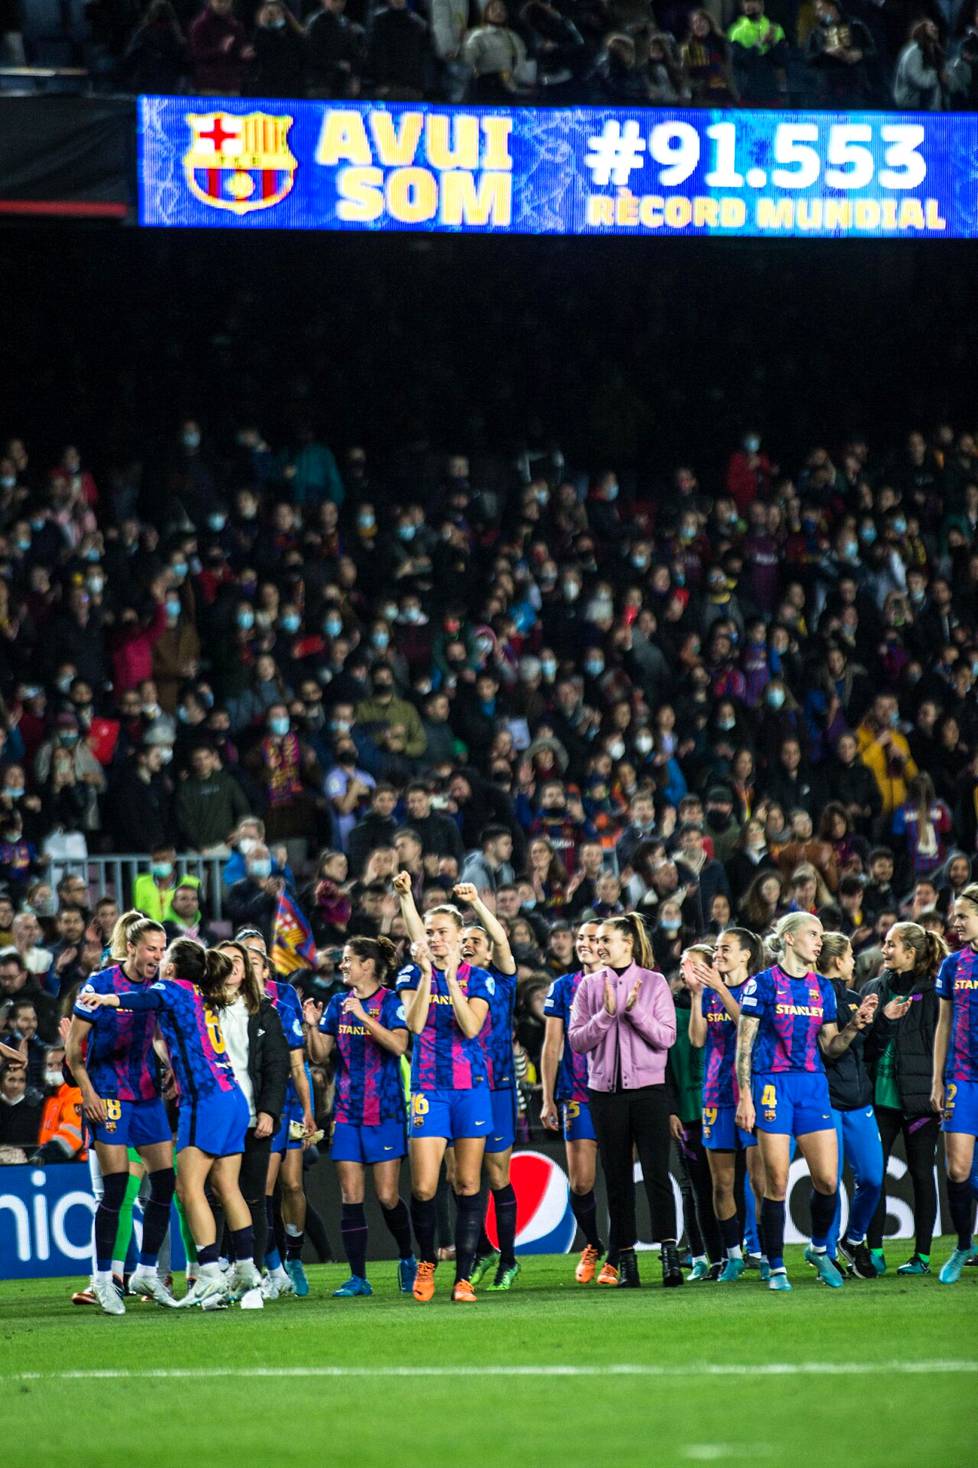 FC Barcelonan naiset kaatoivat maaliskuussa Real Madridin peräti 91 553 katsojan edessä.